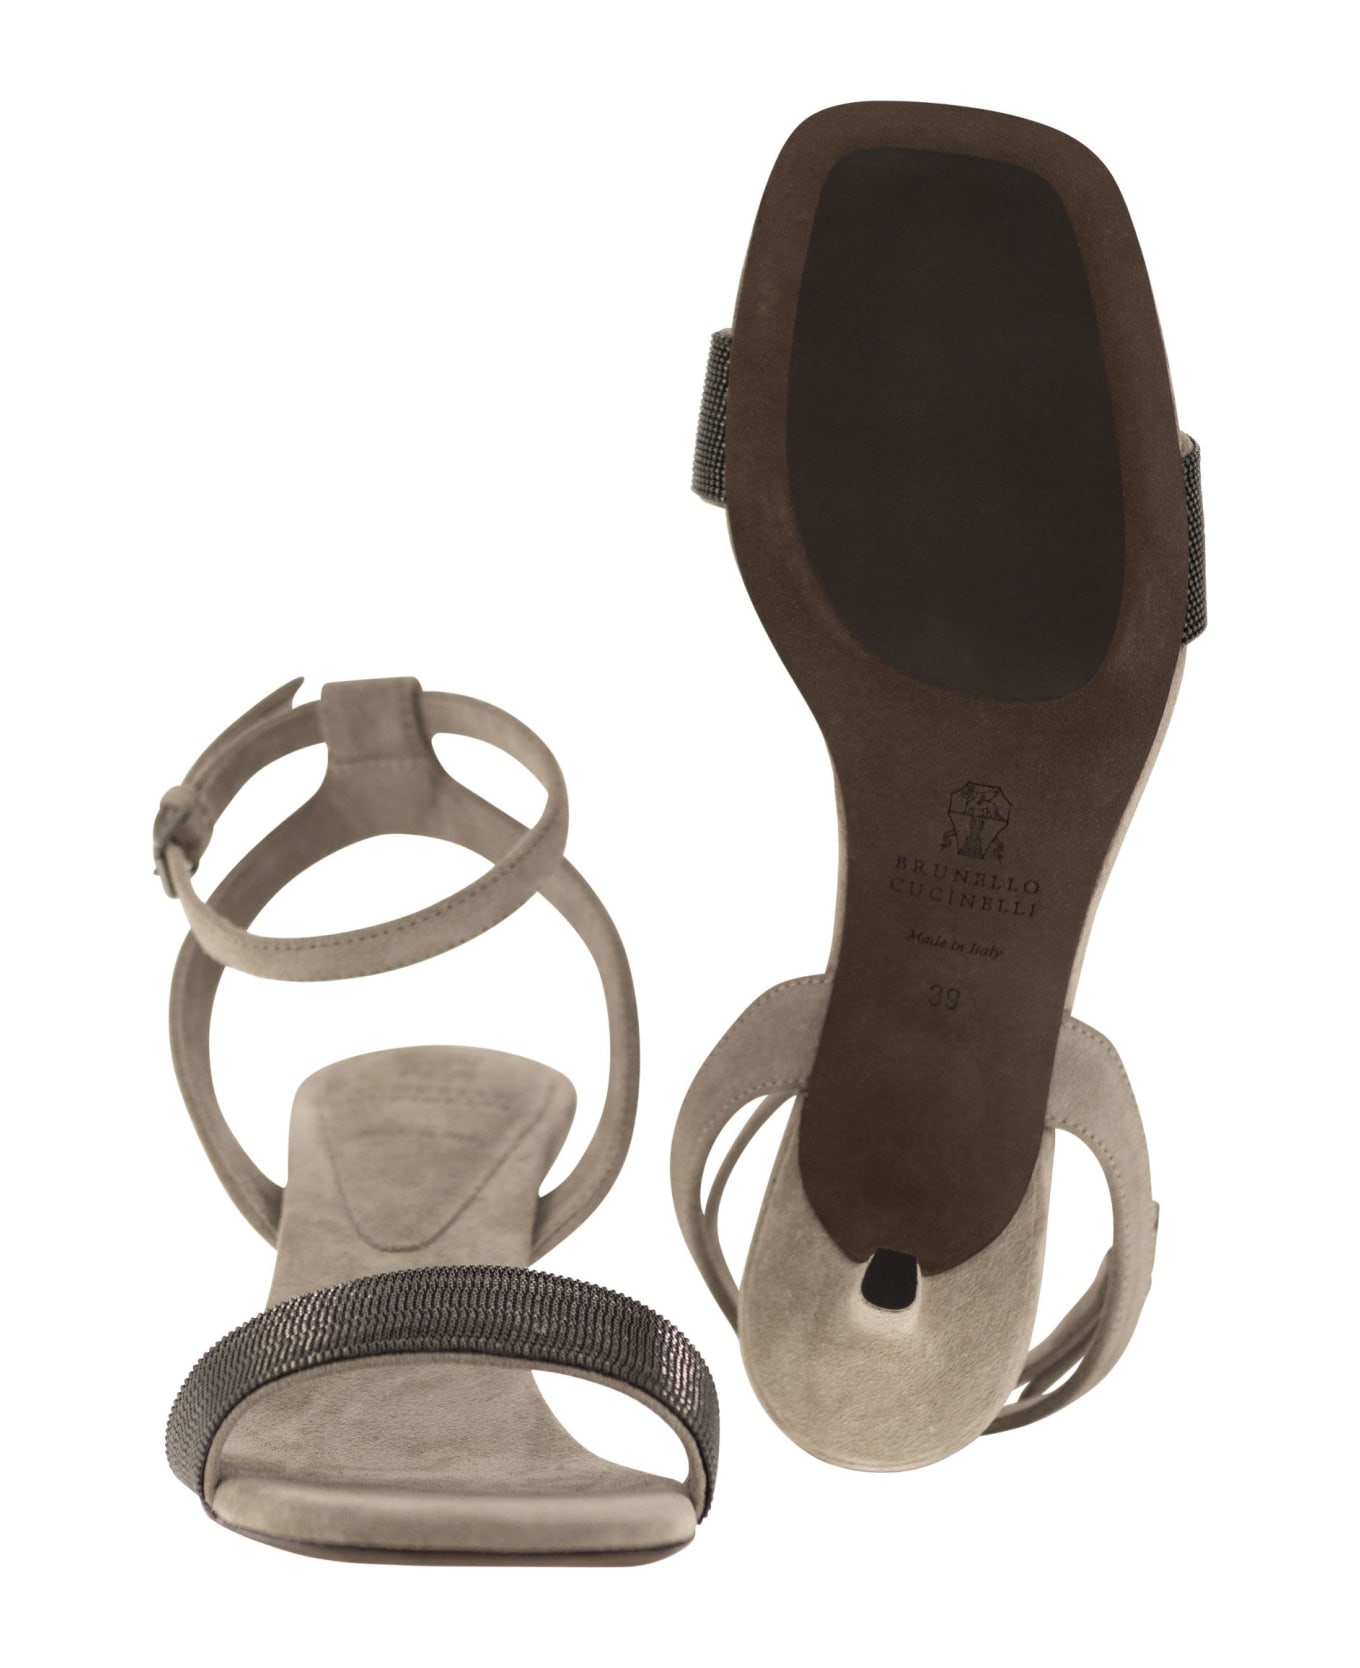 Brunello Cucinelli Suede Sandals With Precious Insert - Stone サンダル